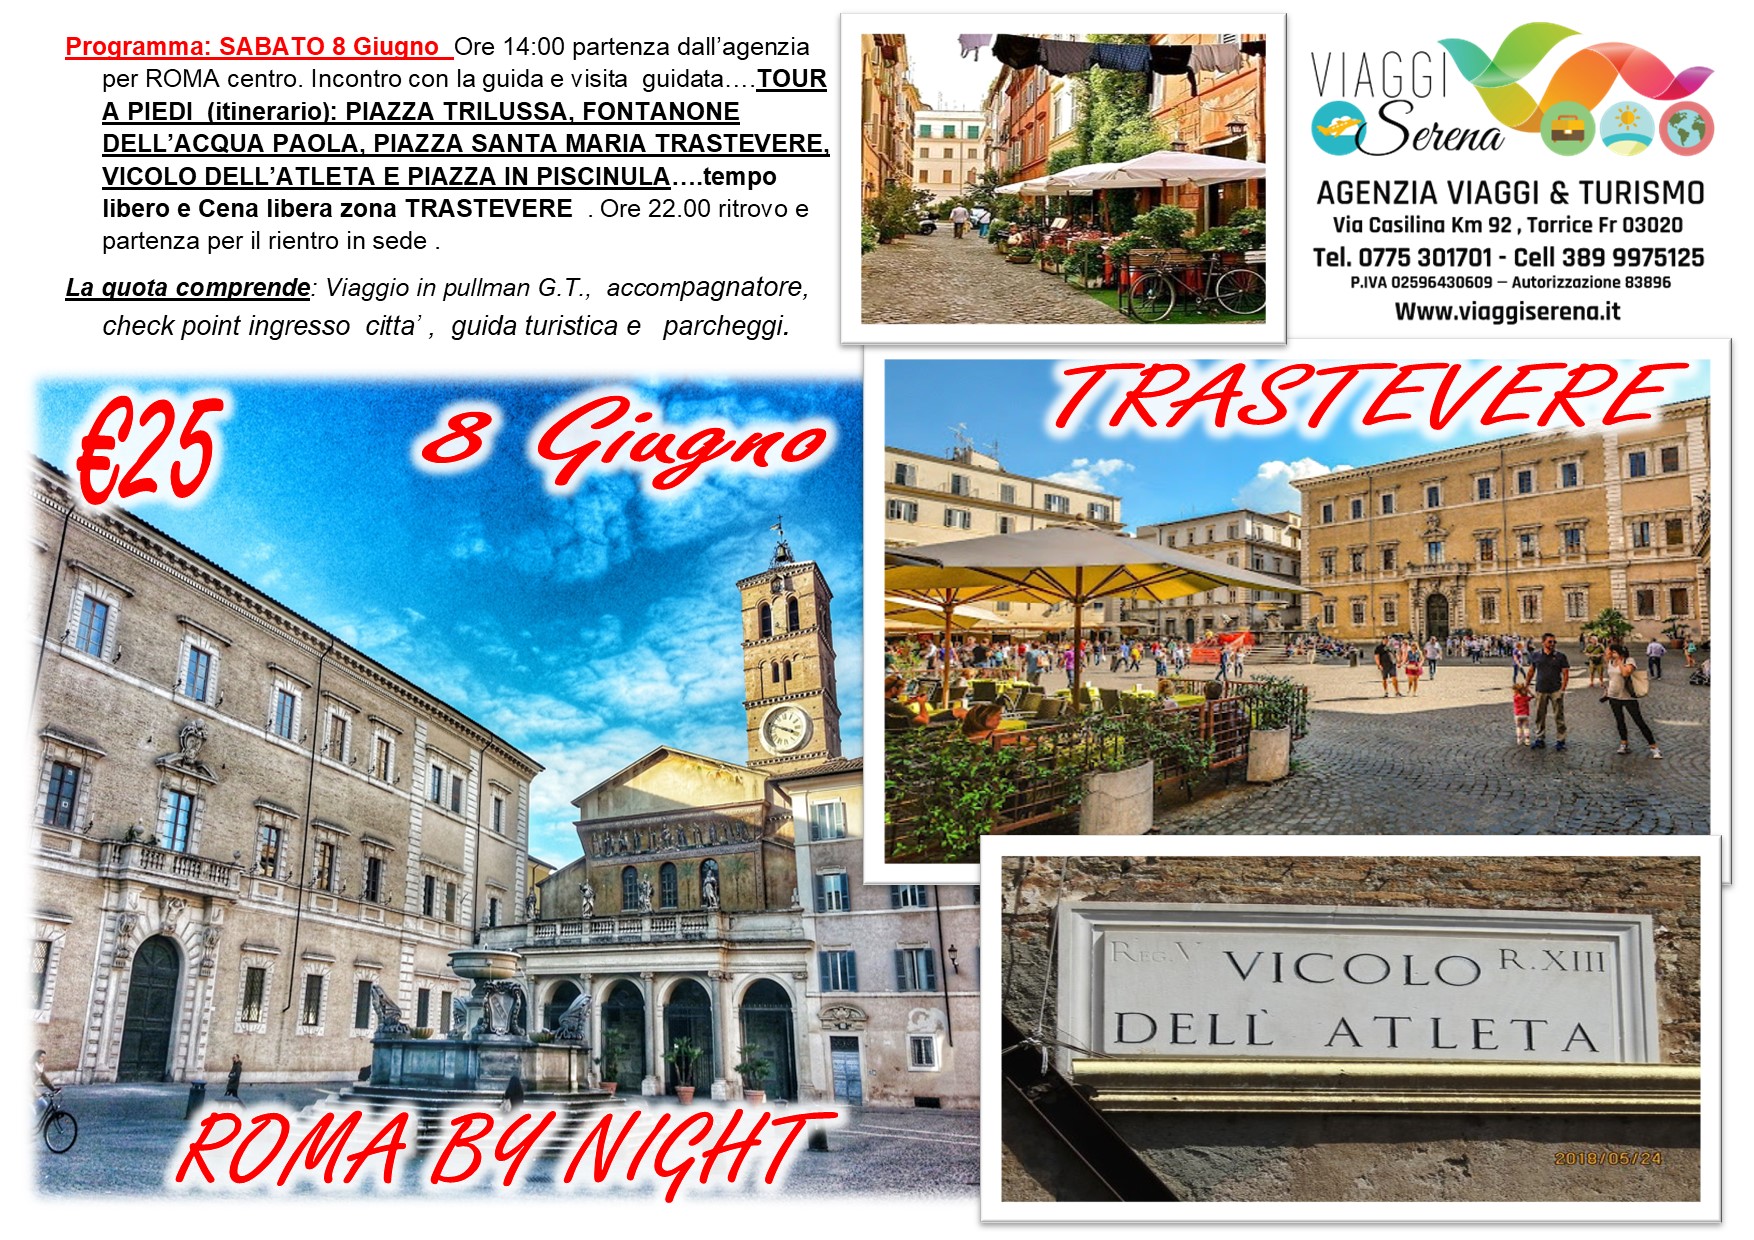 Viaggi di gruppo: Roma by Night Tour Trastevere 8 Giugno € 25,00